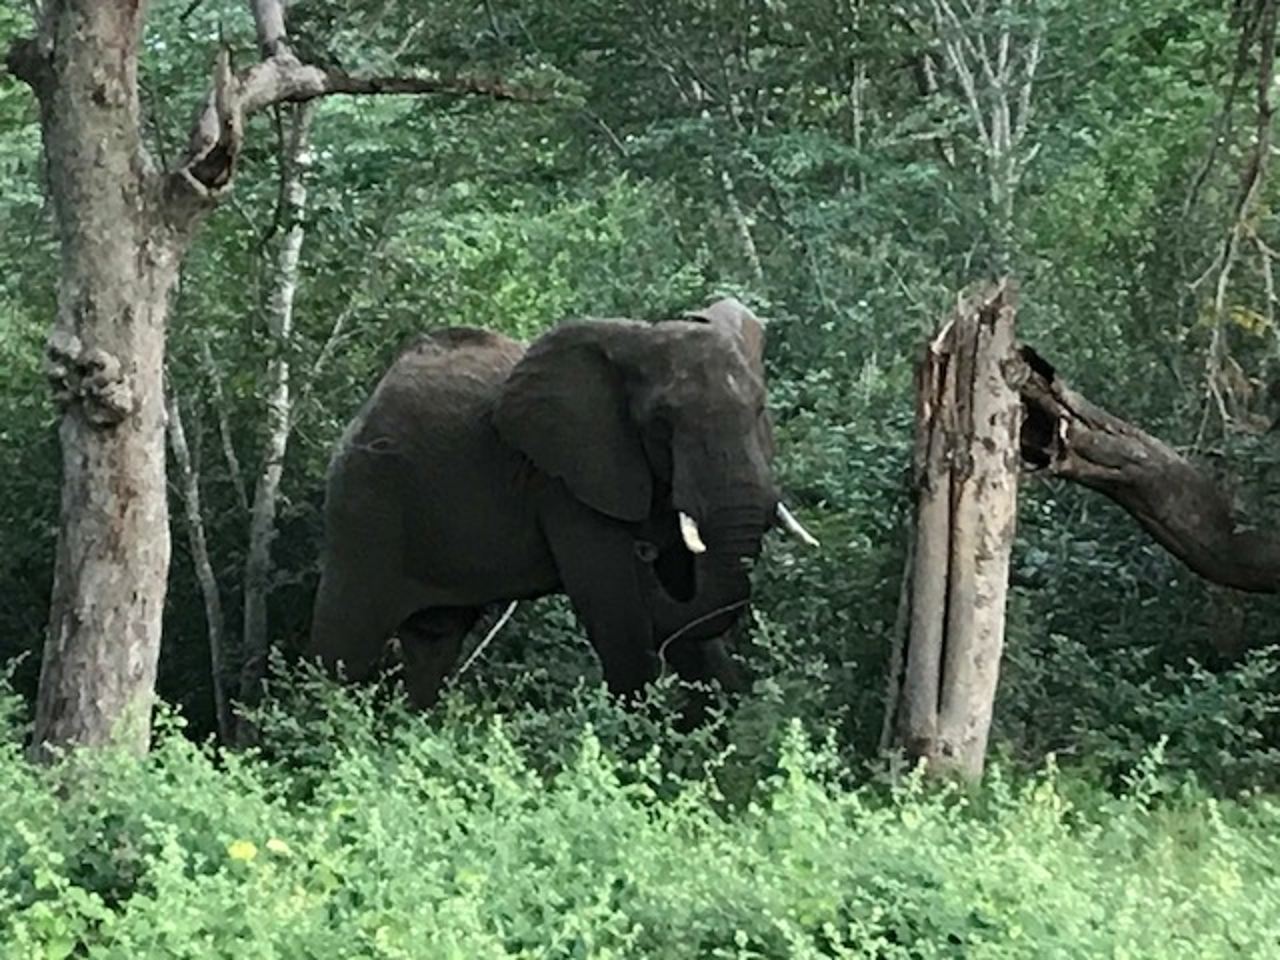 Elephant by roadside, Matobo National Park, Zimbabwe